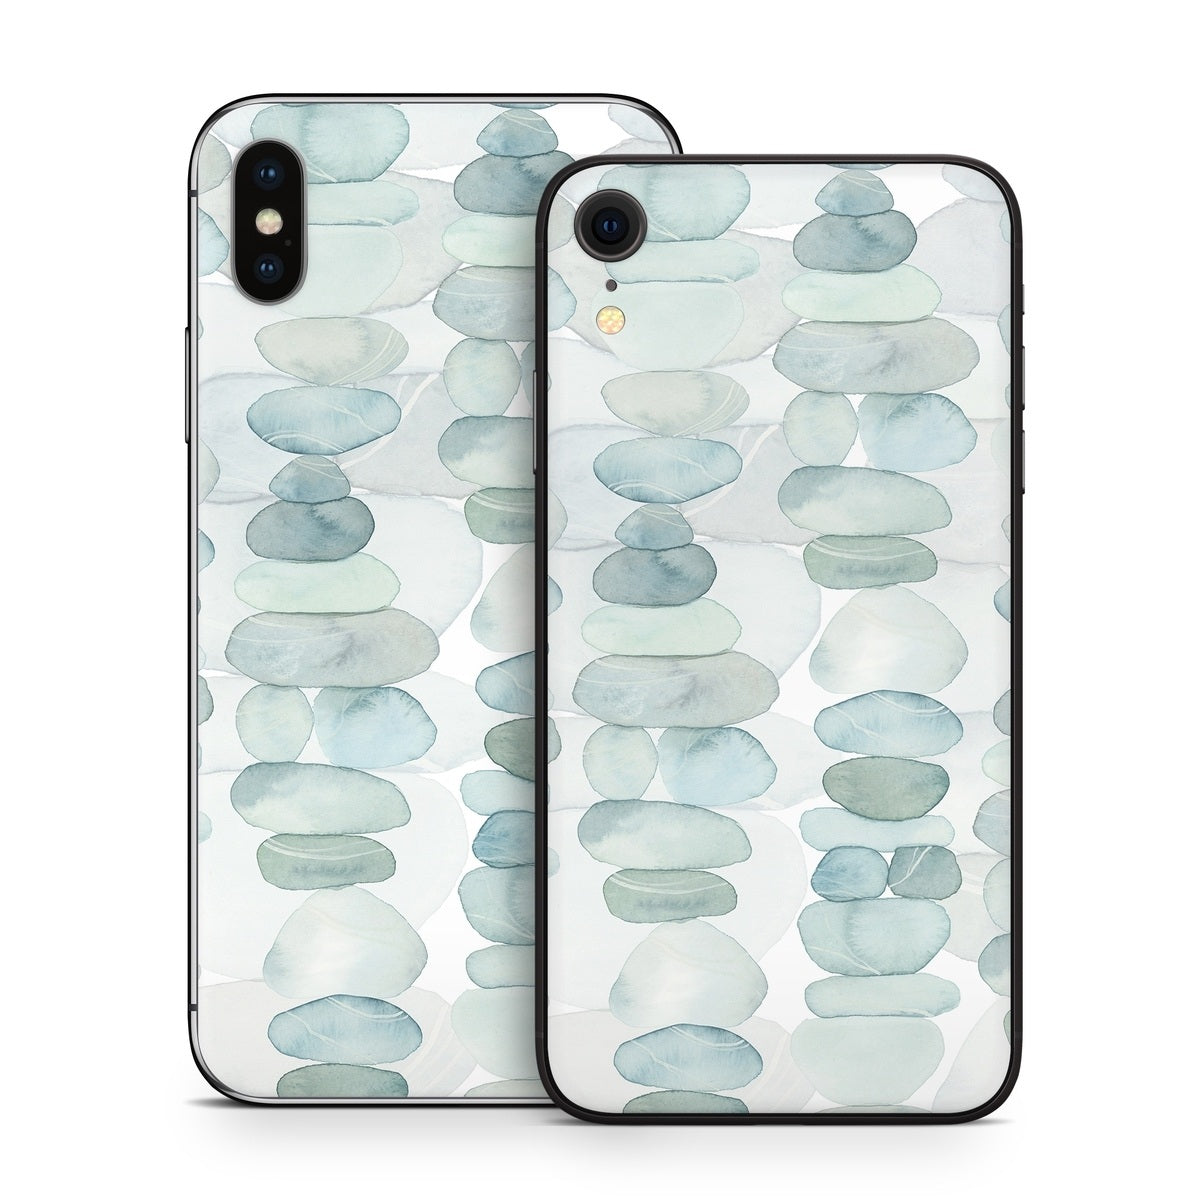 Zen Stones - Apple iPhone X Skin